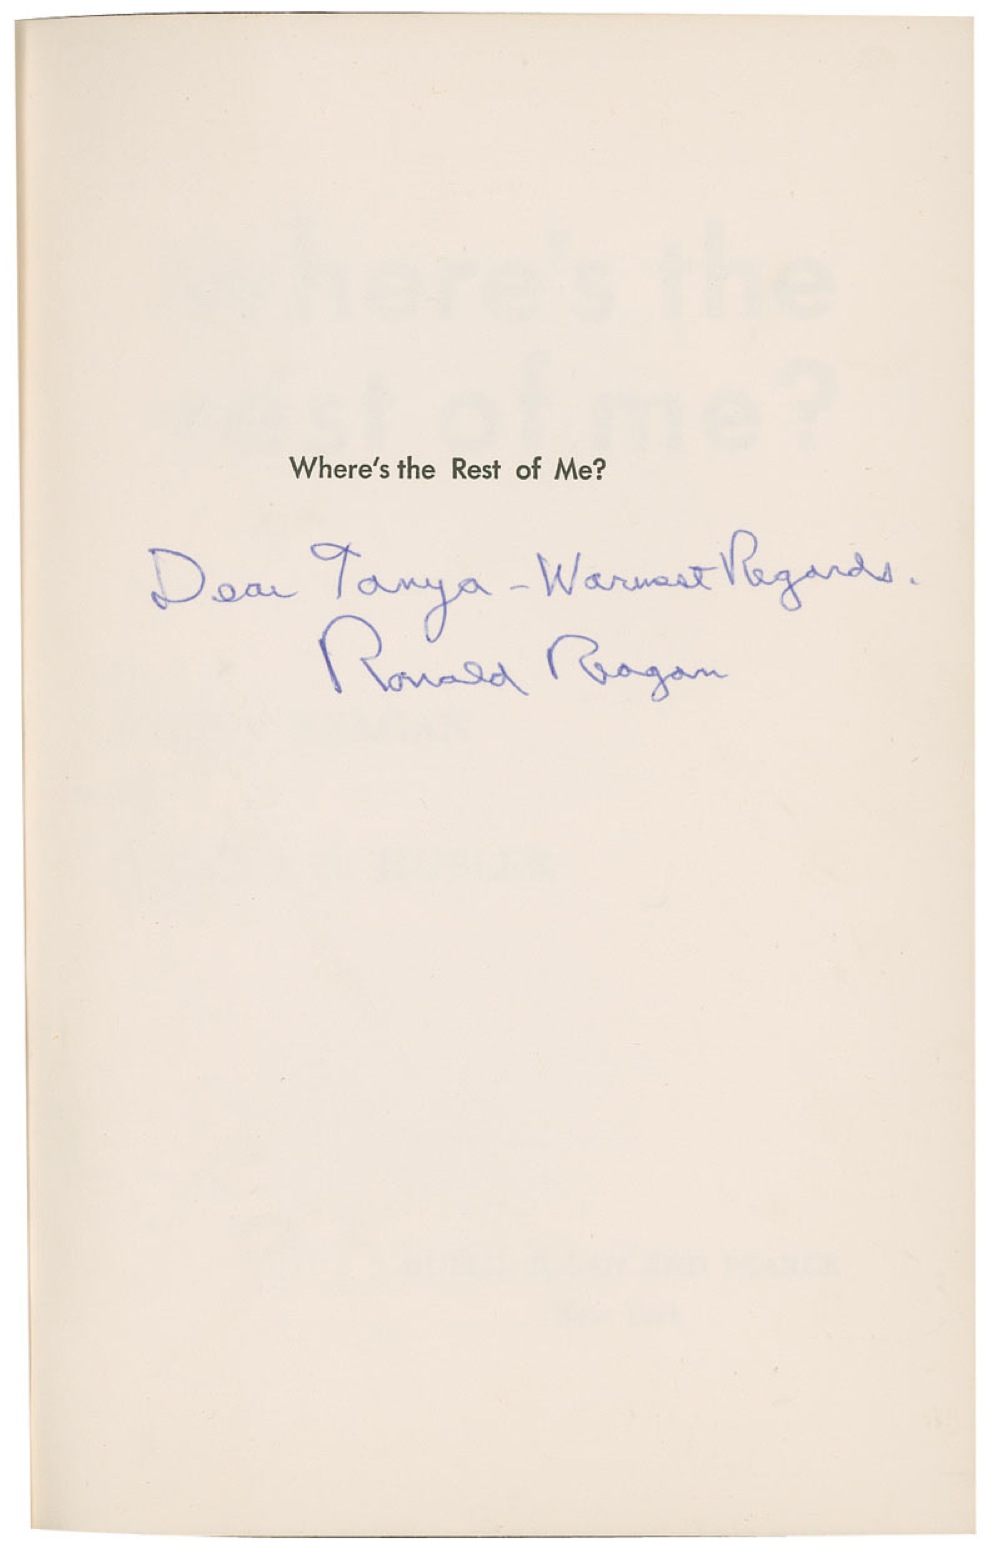 Lot #101 Ronald Reagan